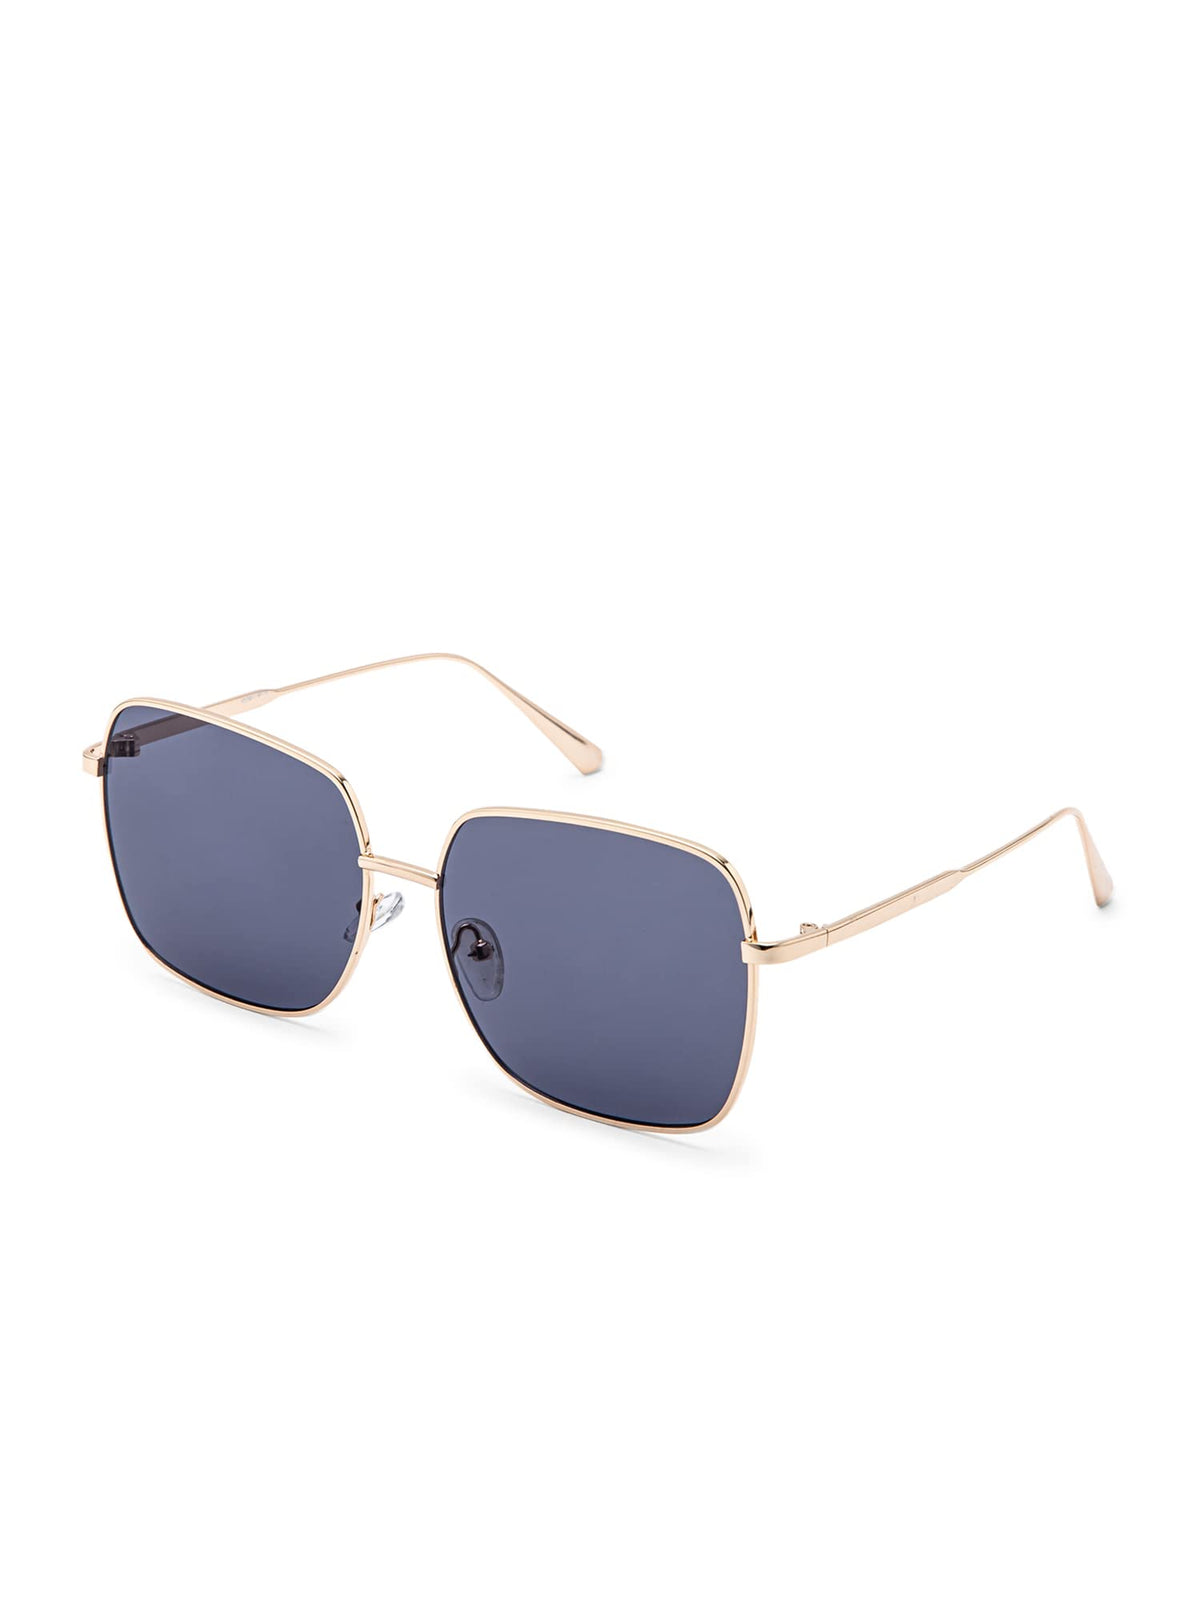 Intellilens Square UV Protection Sunglasses For Men & Women | Goggles for Men & Women (Gold) (59-17-144)